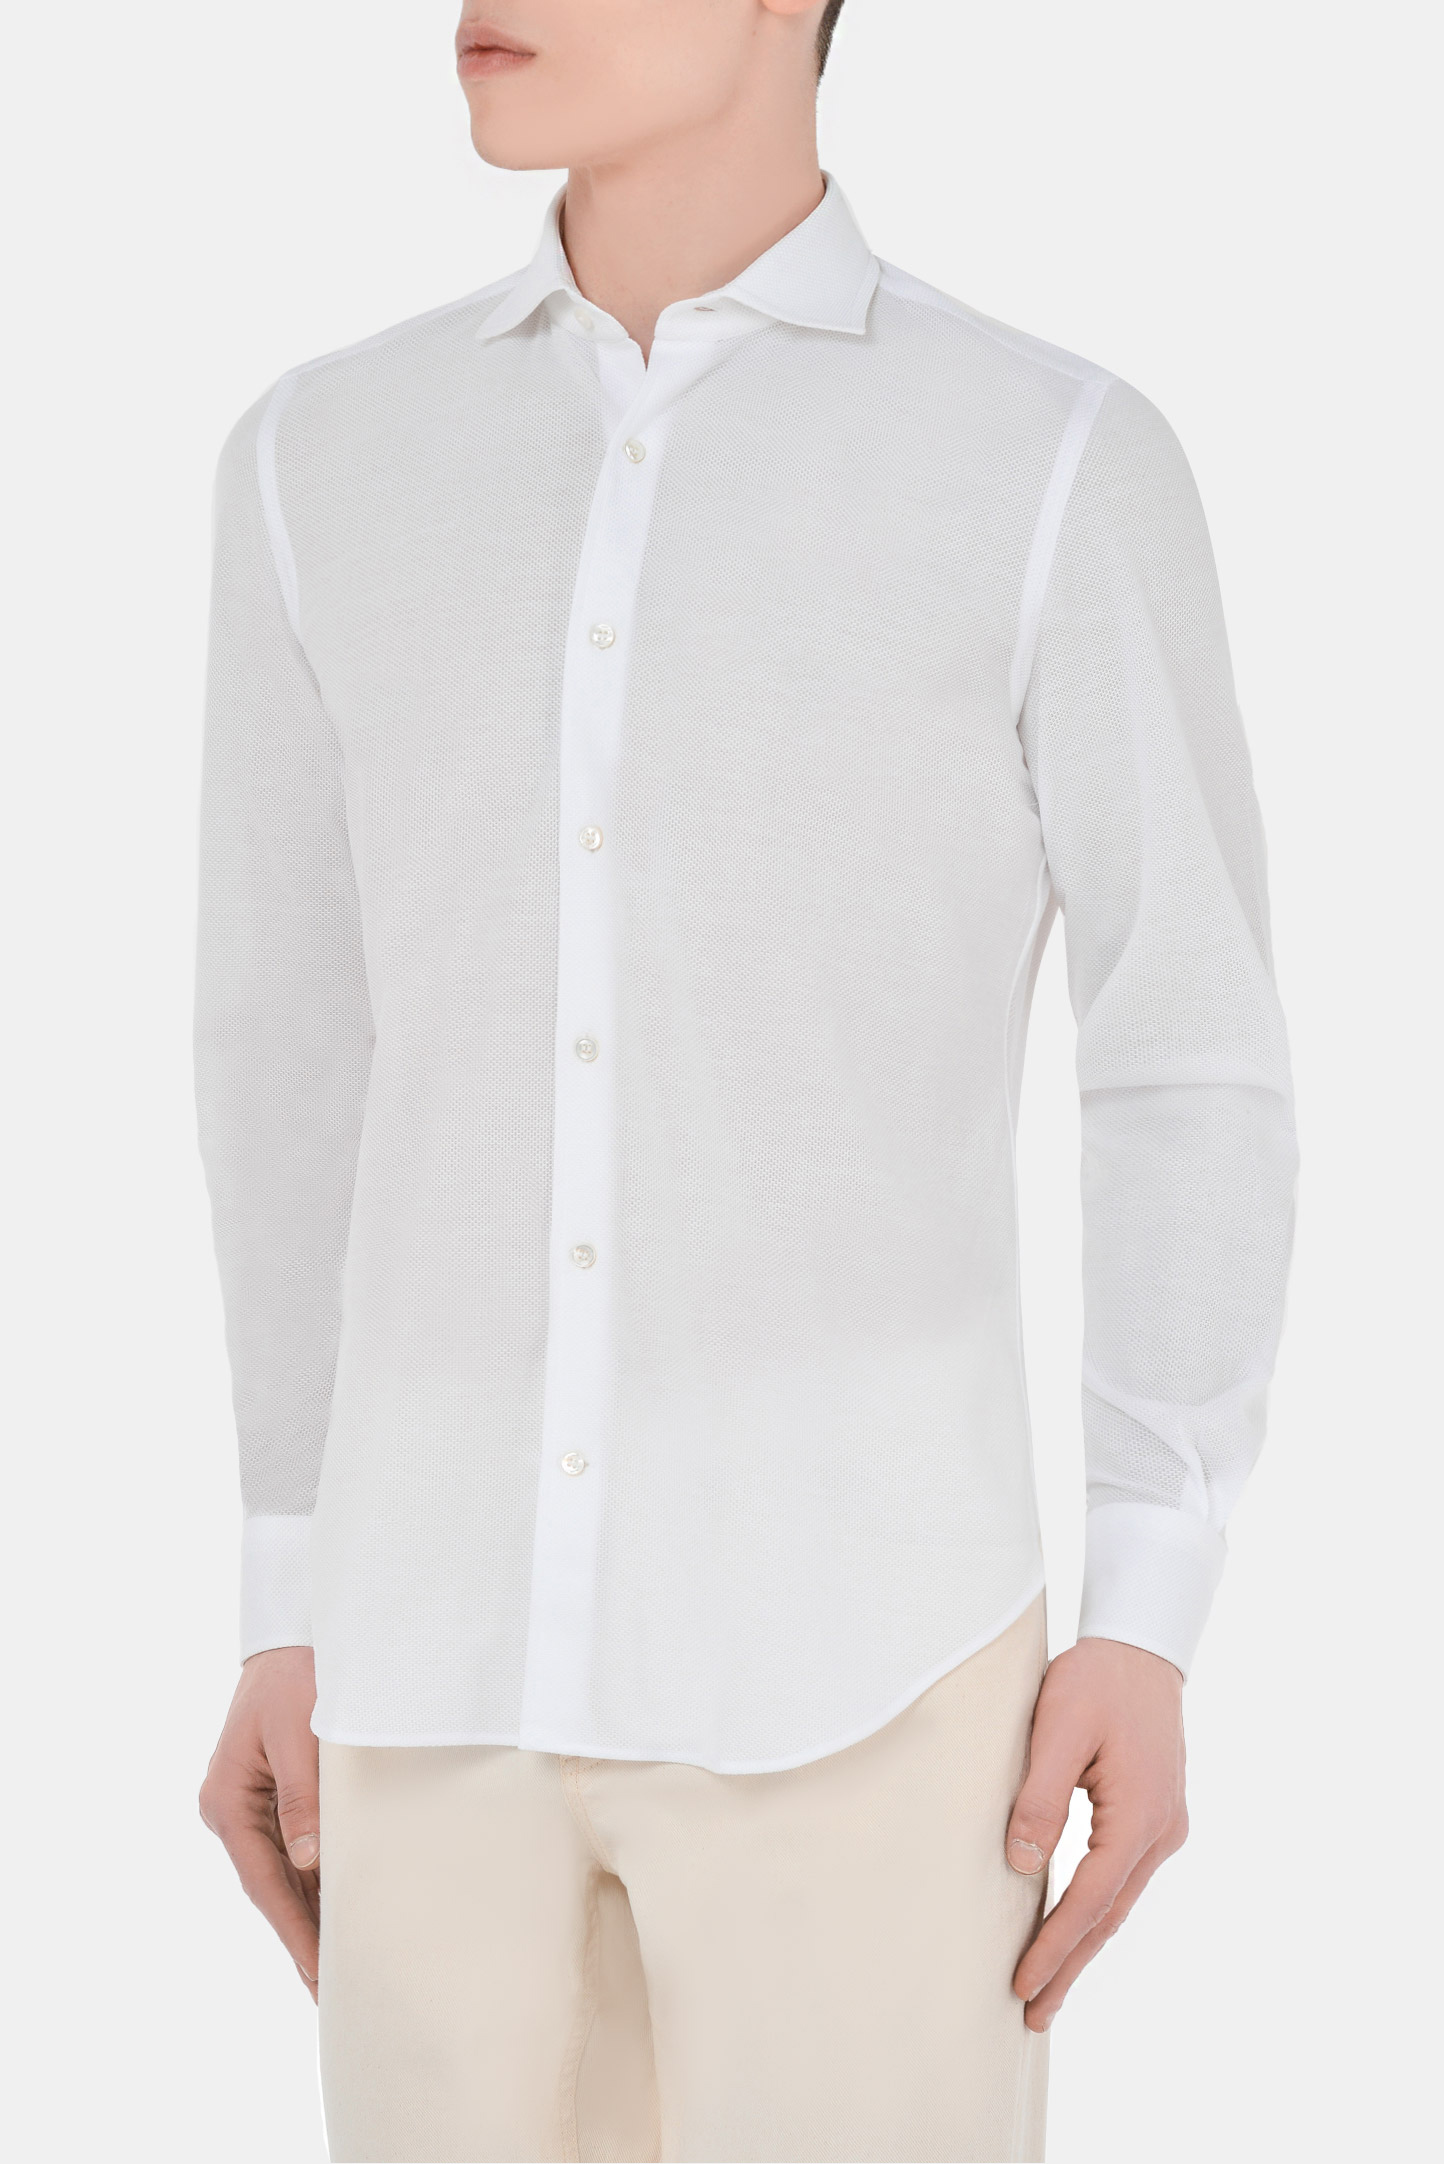 Рубашка LORO PIANA F1-FAI0966, цвет: Белый, Мужской